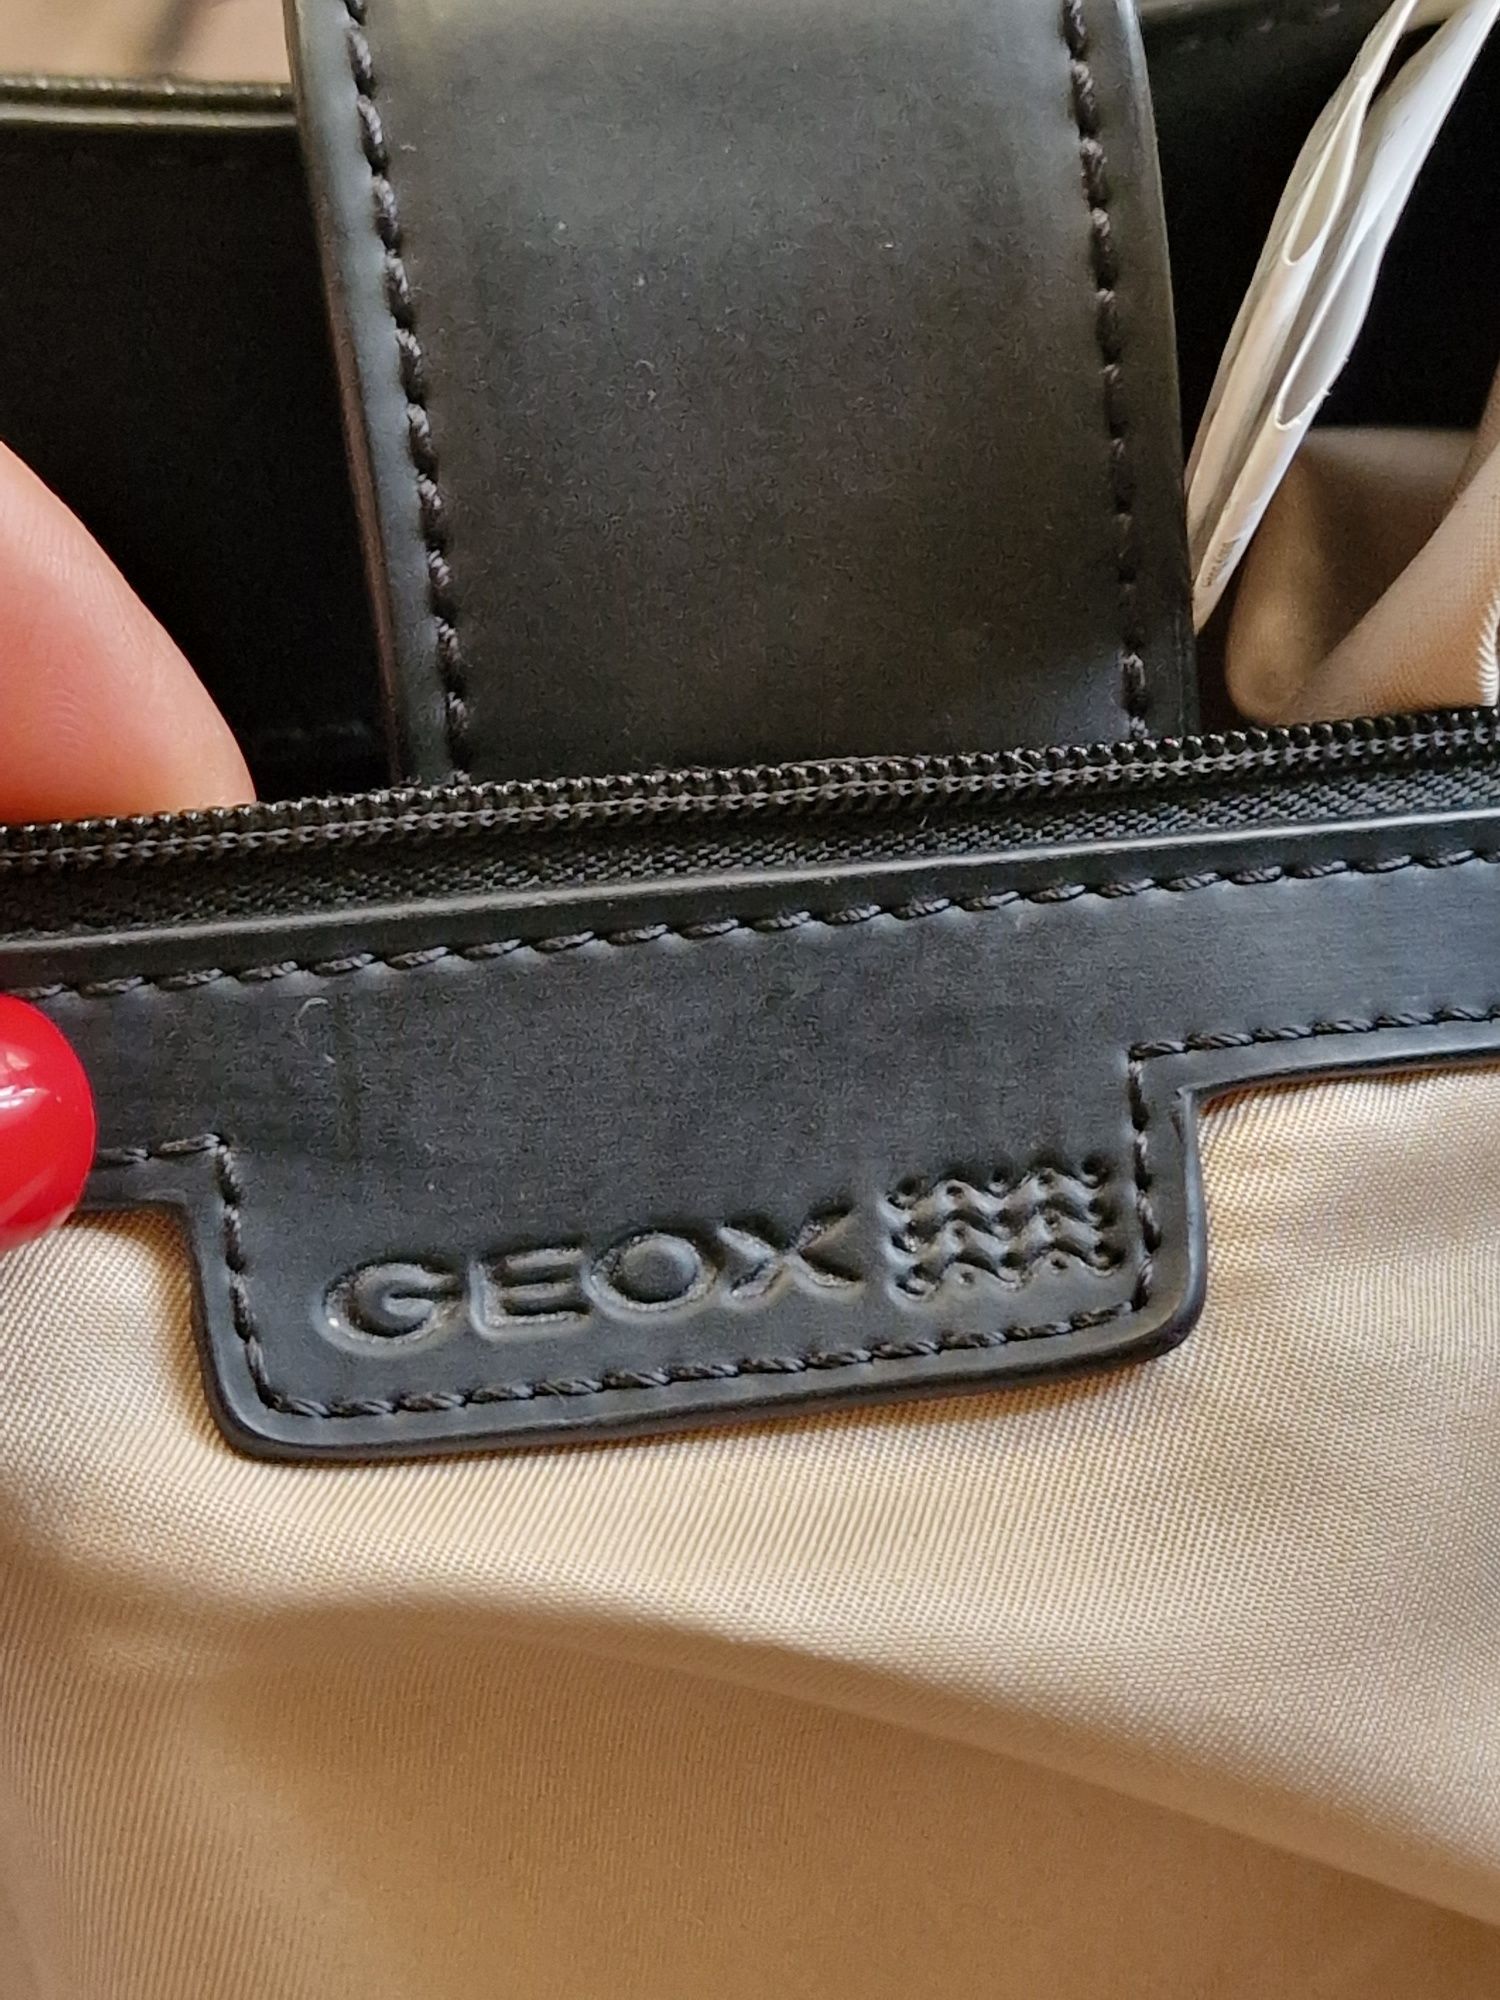 стильна шкіряна сумка geox , оригінал 
гарний стан
можна змінювати фор